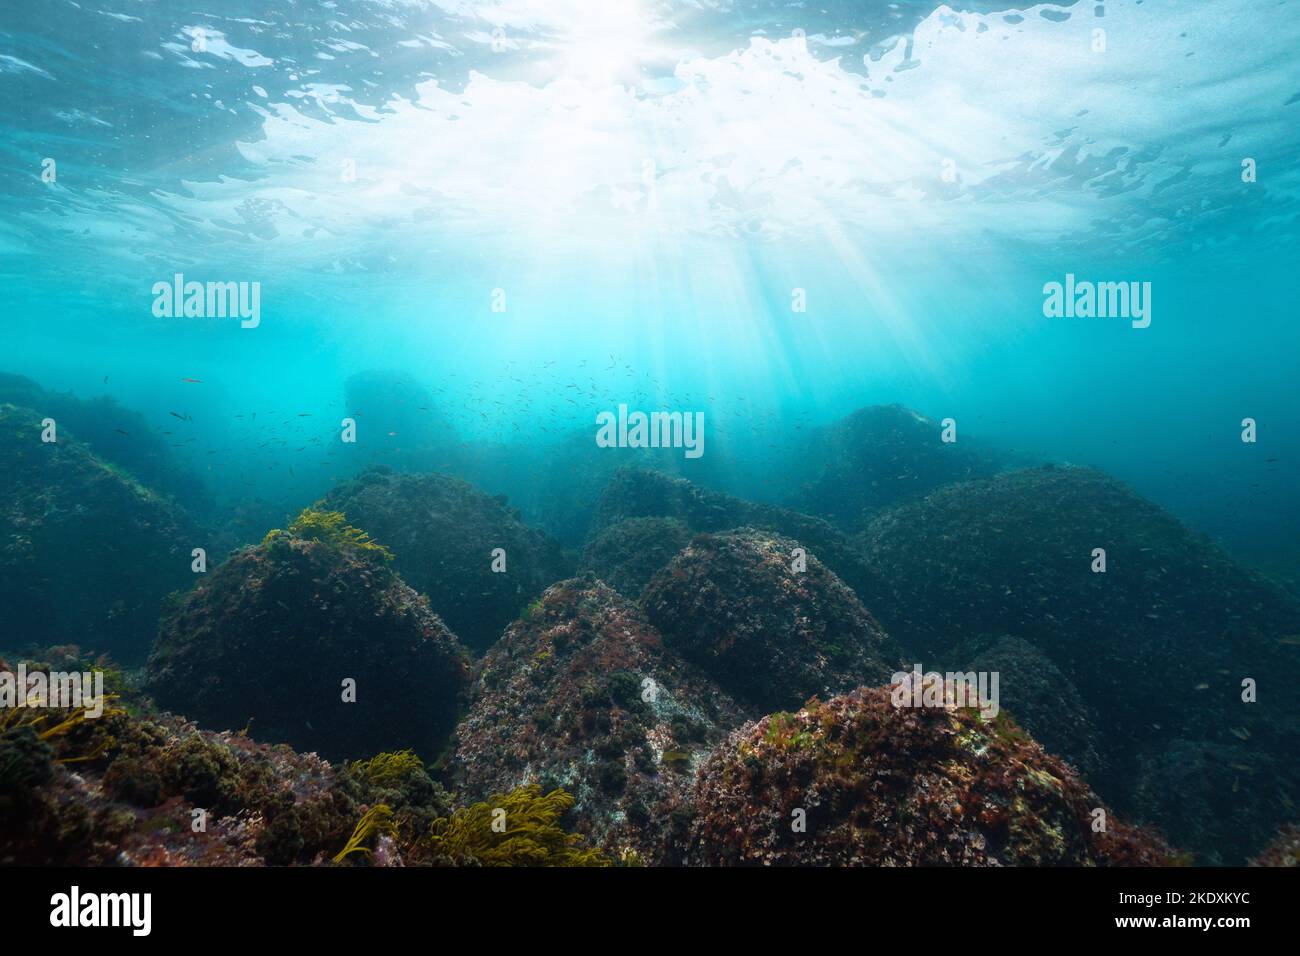 Soleil sous l'eau avec des rochers sur le fond de l'océan, océan Atlantique, Espagne, Galice Banque D'Images